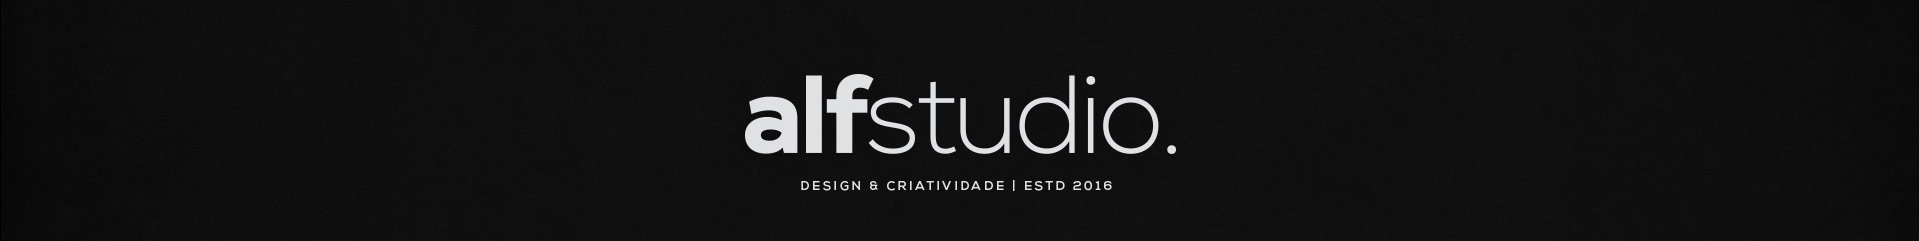 Alf Studio Design's profile banner